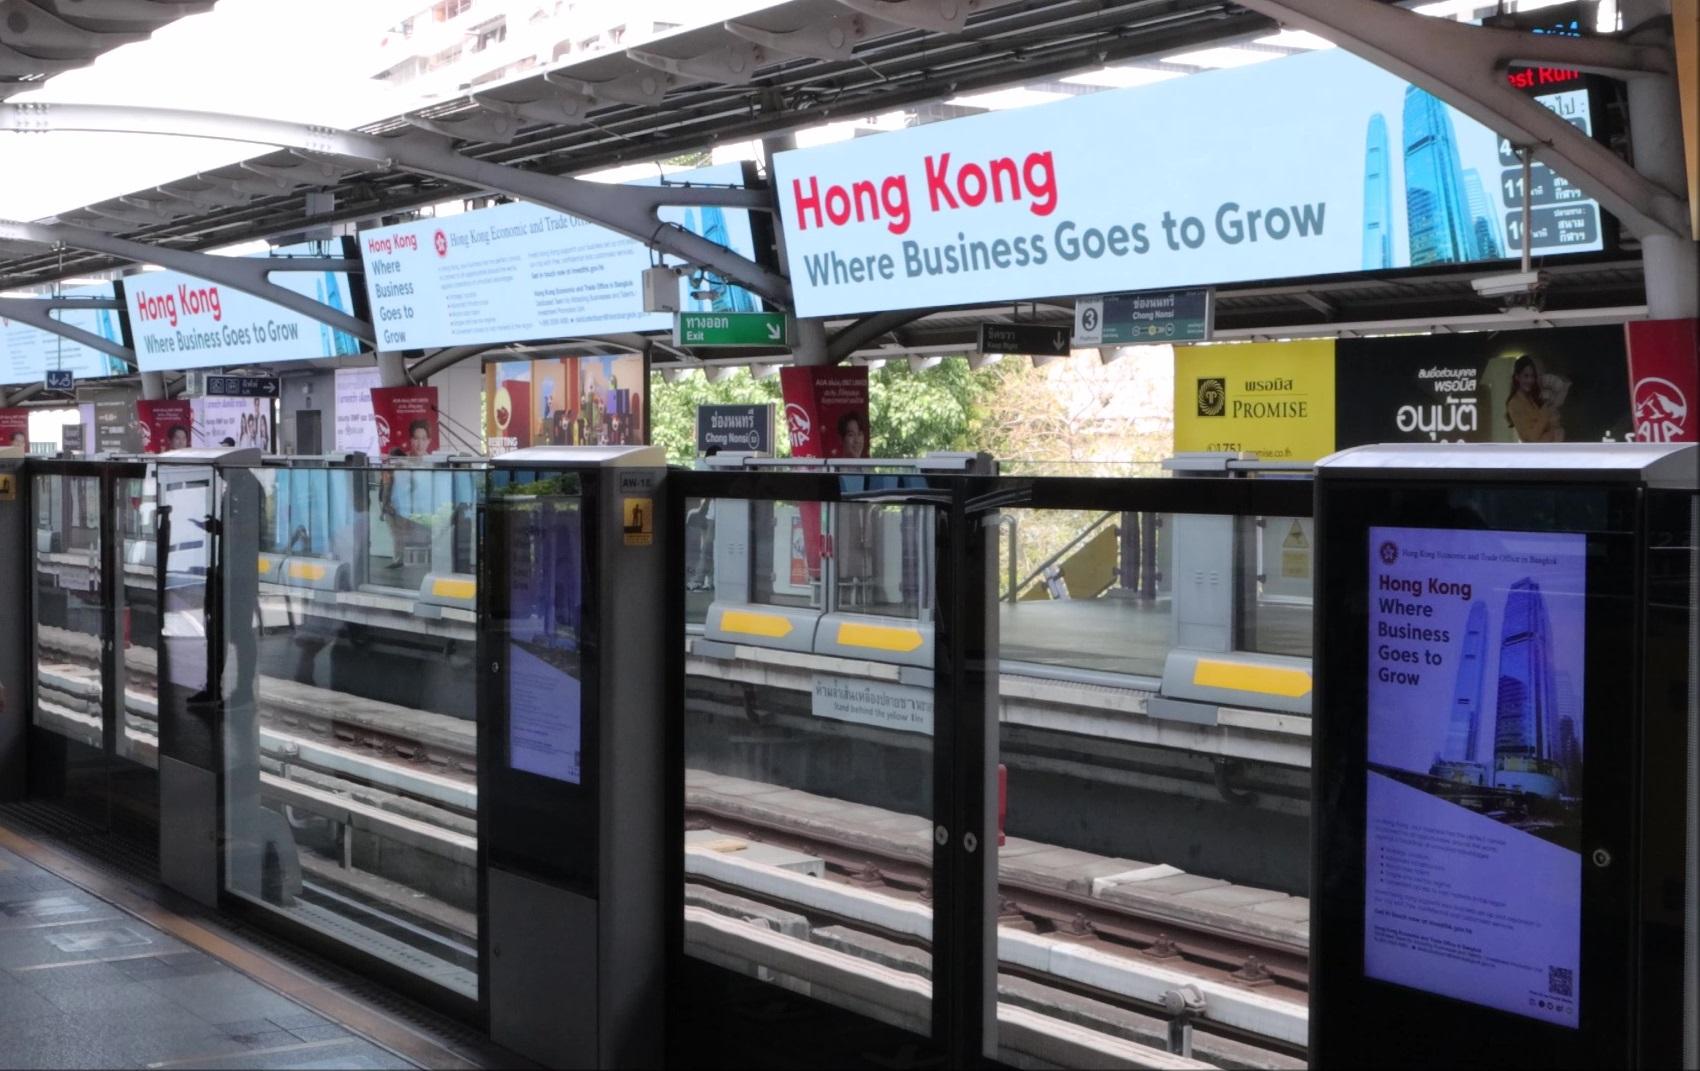 香港駐曼谷經濟貿易辦事處在泰國開展宣傳活動，推廣香港的無限商機。